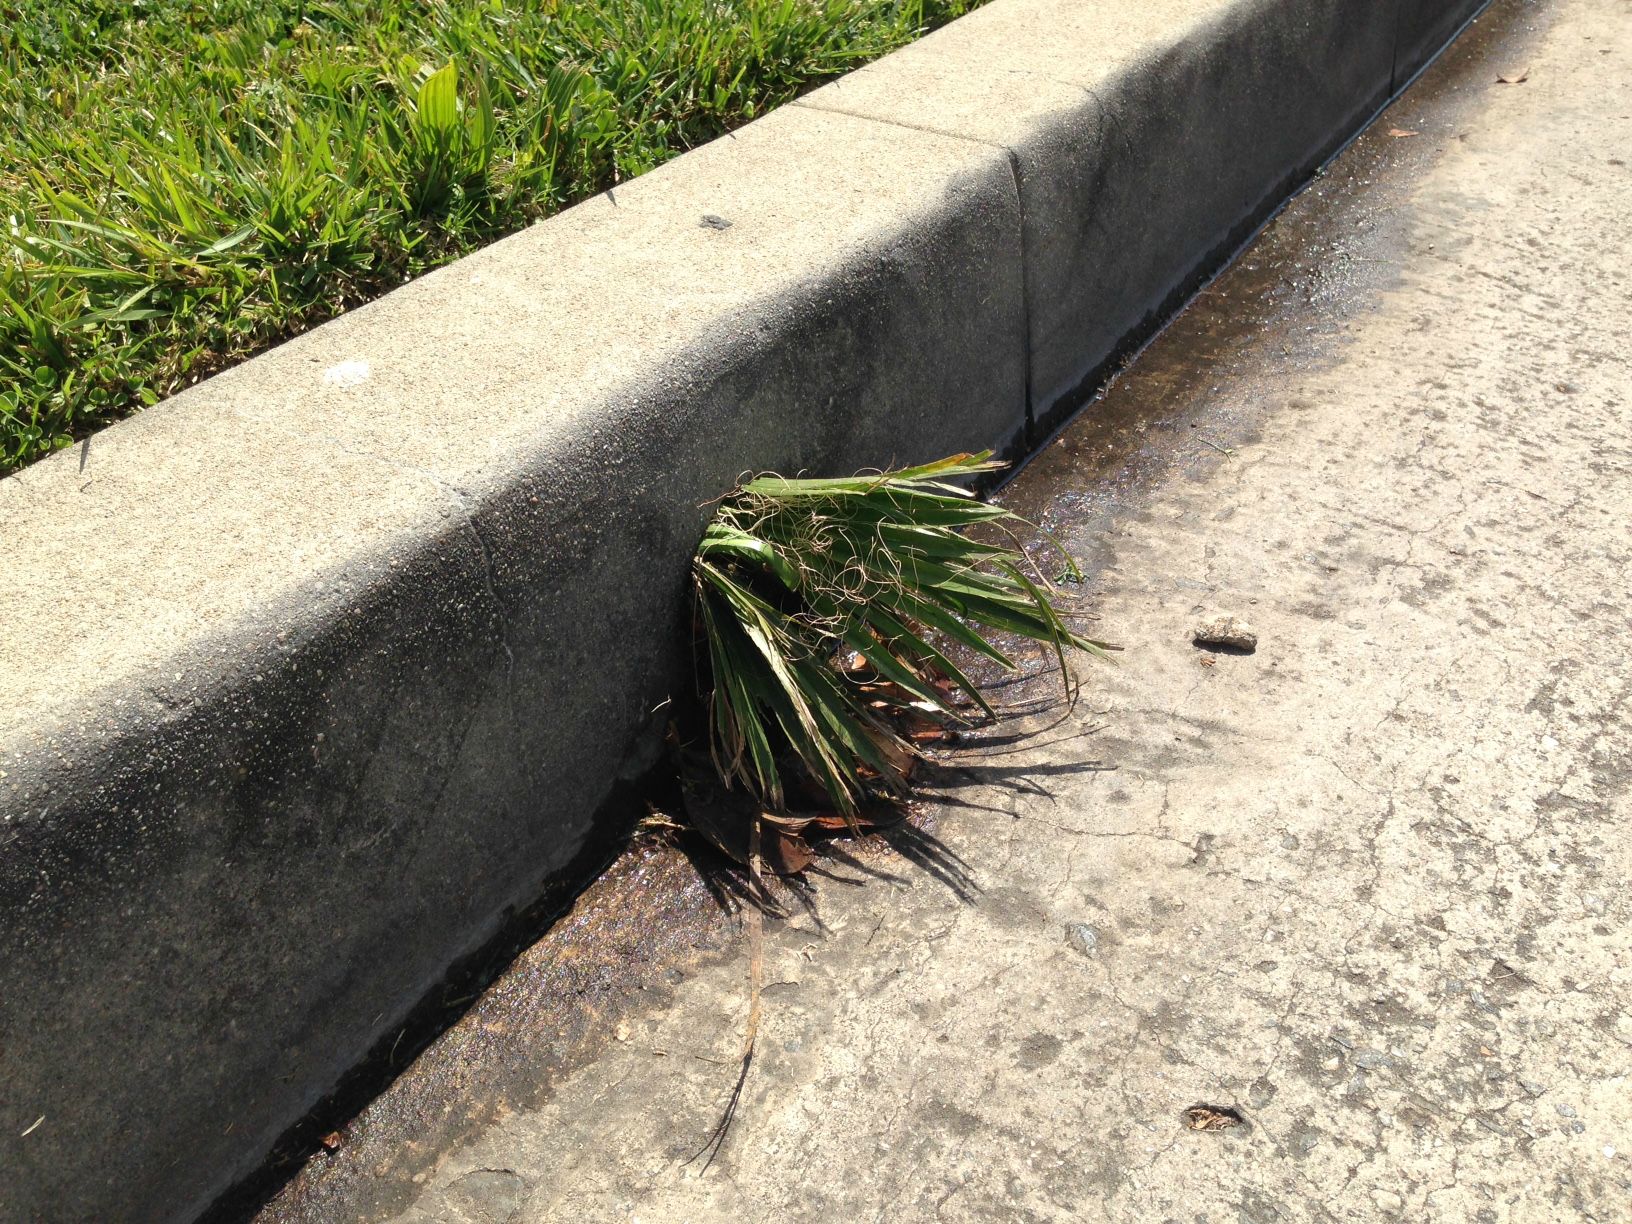 Grass growing sideways through the curb : mildlyinteresting